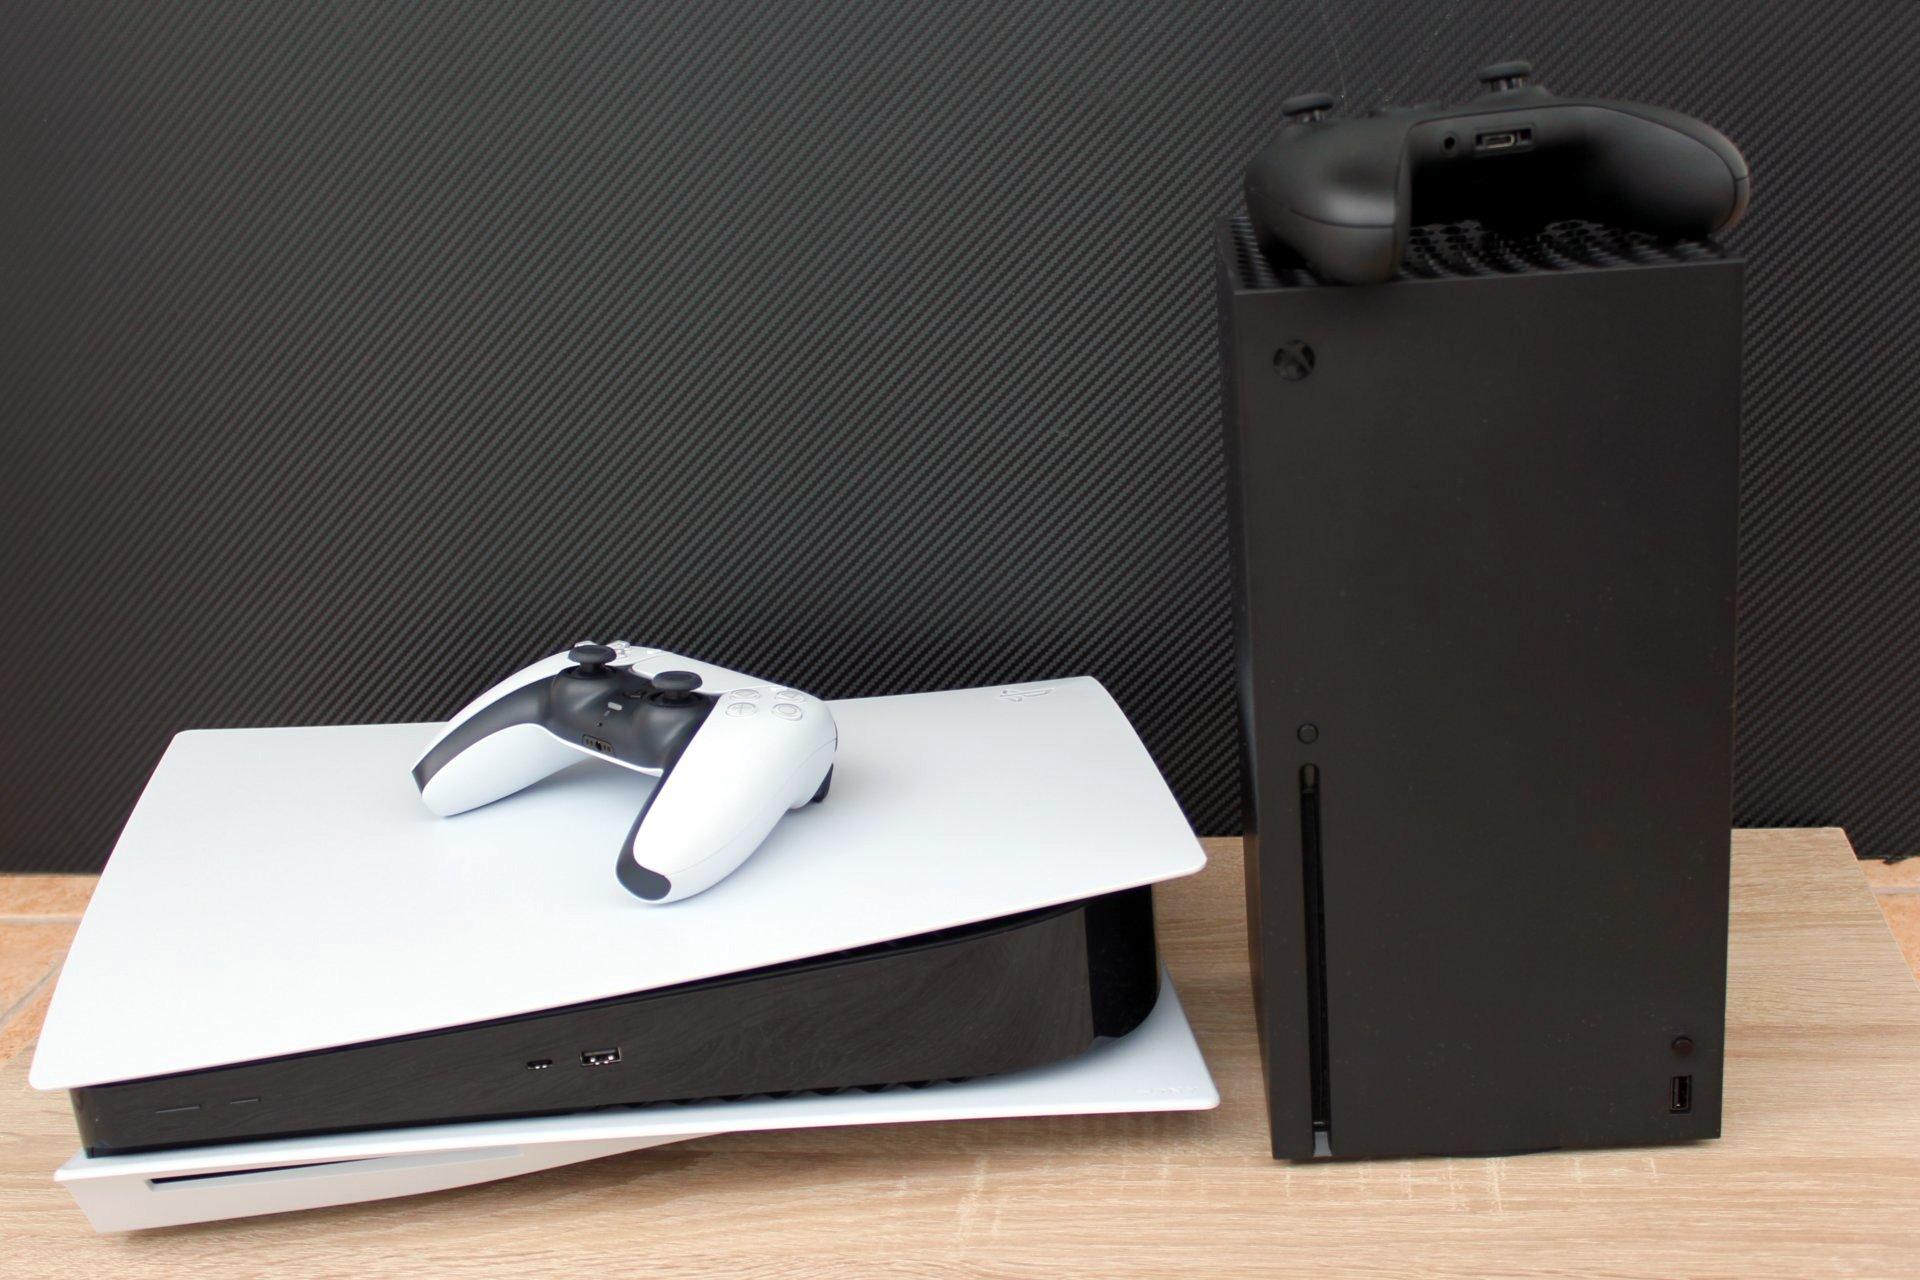 PlayStation 5 stavilo na extravagantný dizajn. Xbox Series X má zase kompaktnejšiu a praktickejšiu konštrukciu.